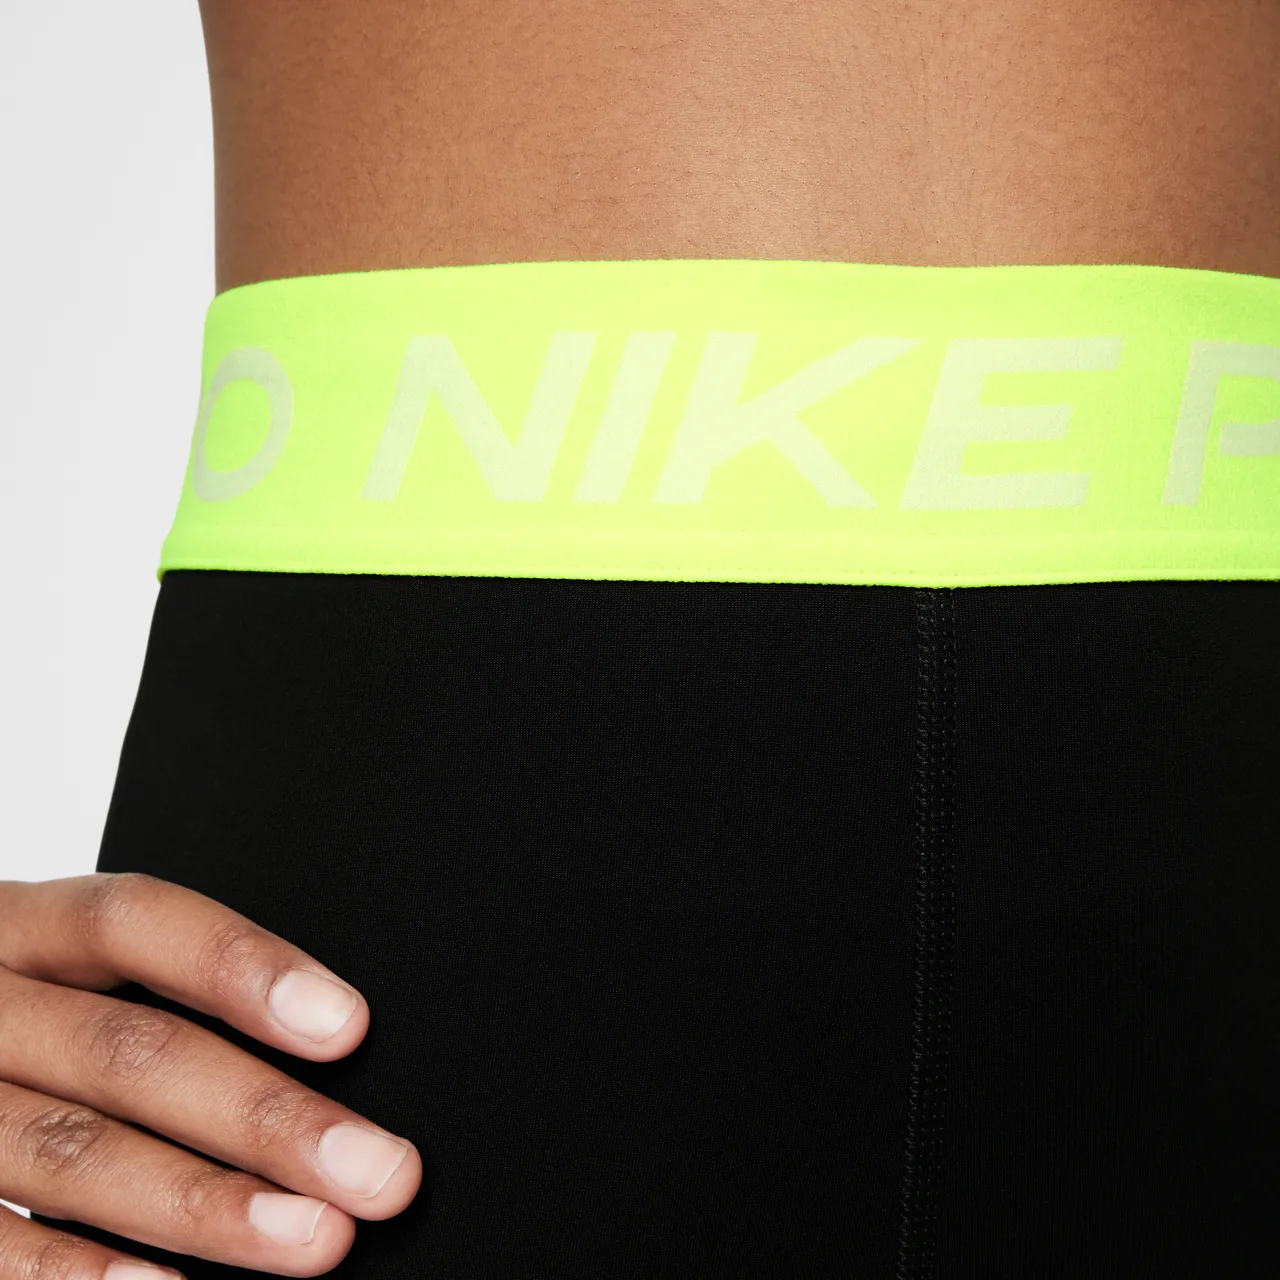 Nike Pro Dri-FIT Legging voor meisjes - Zwart